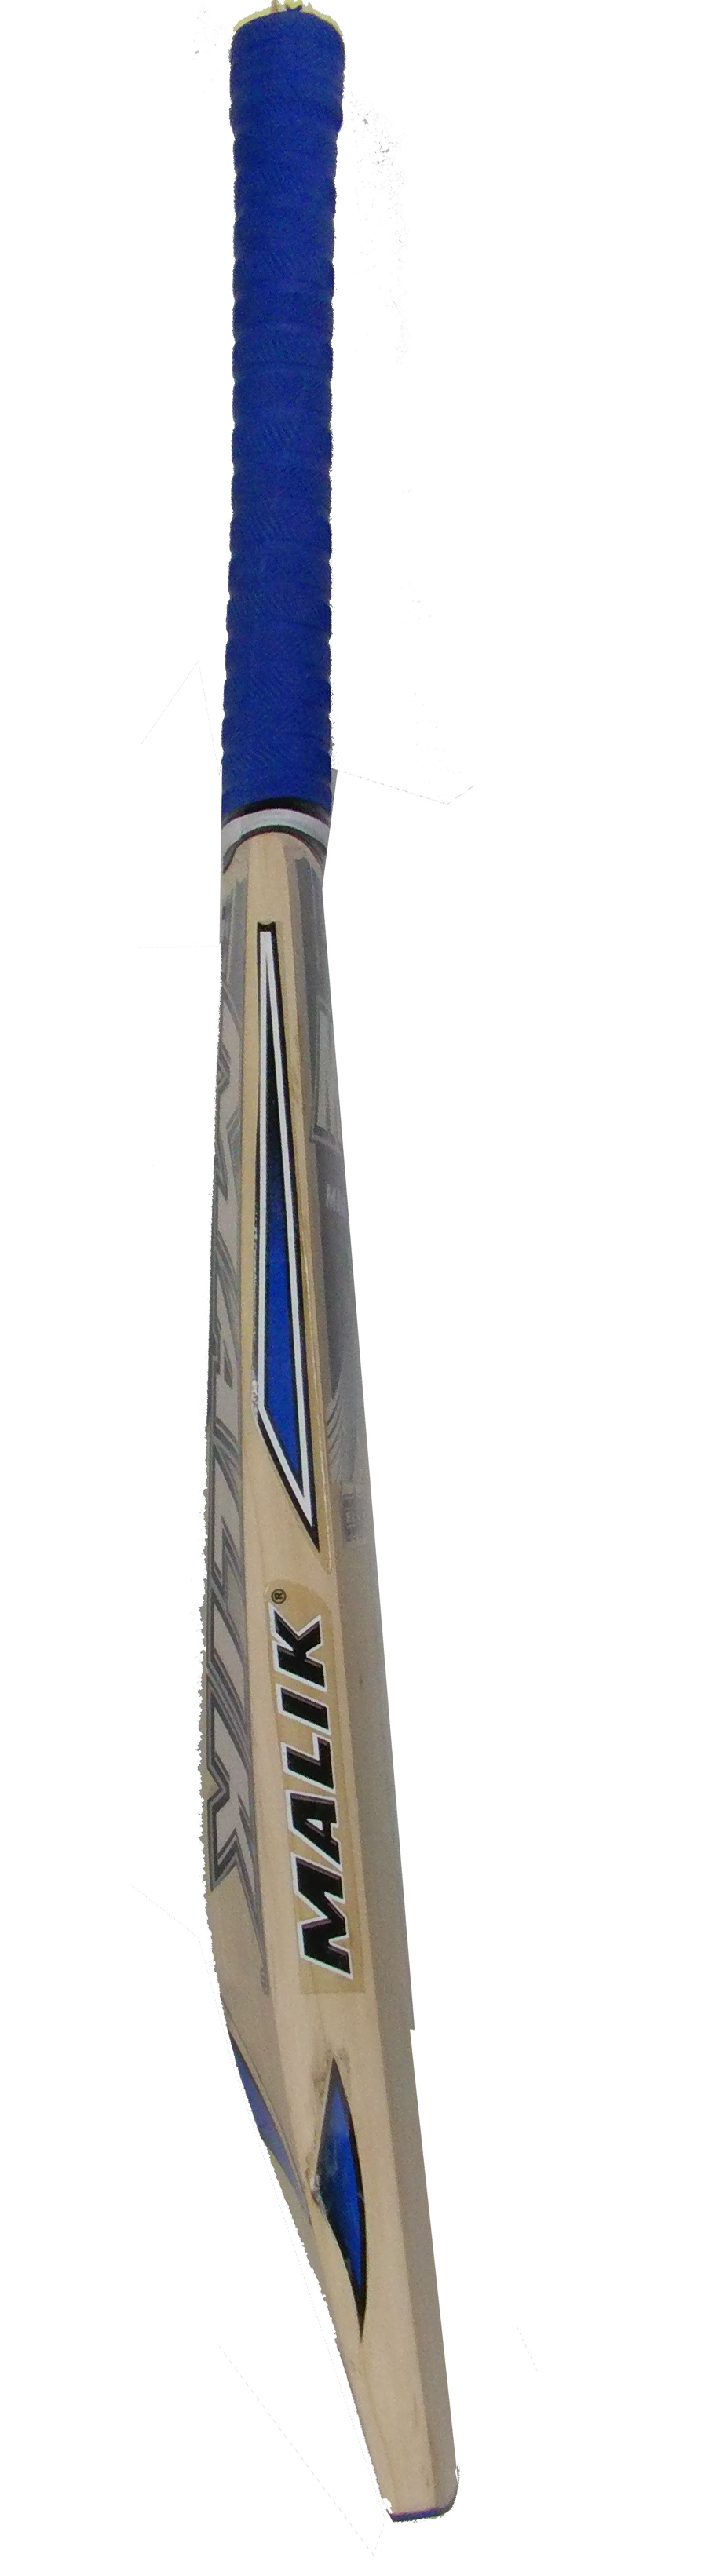 Mb Malik County English Willow Cricket Bat SH 2.8 Lbs Free Bag